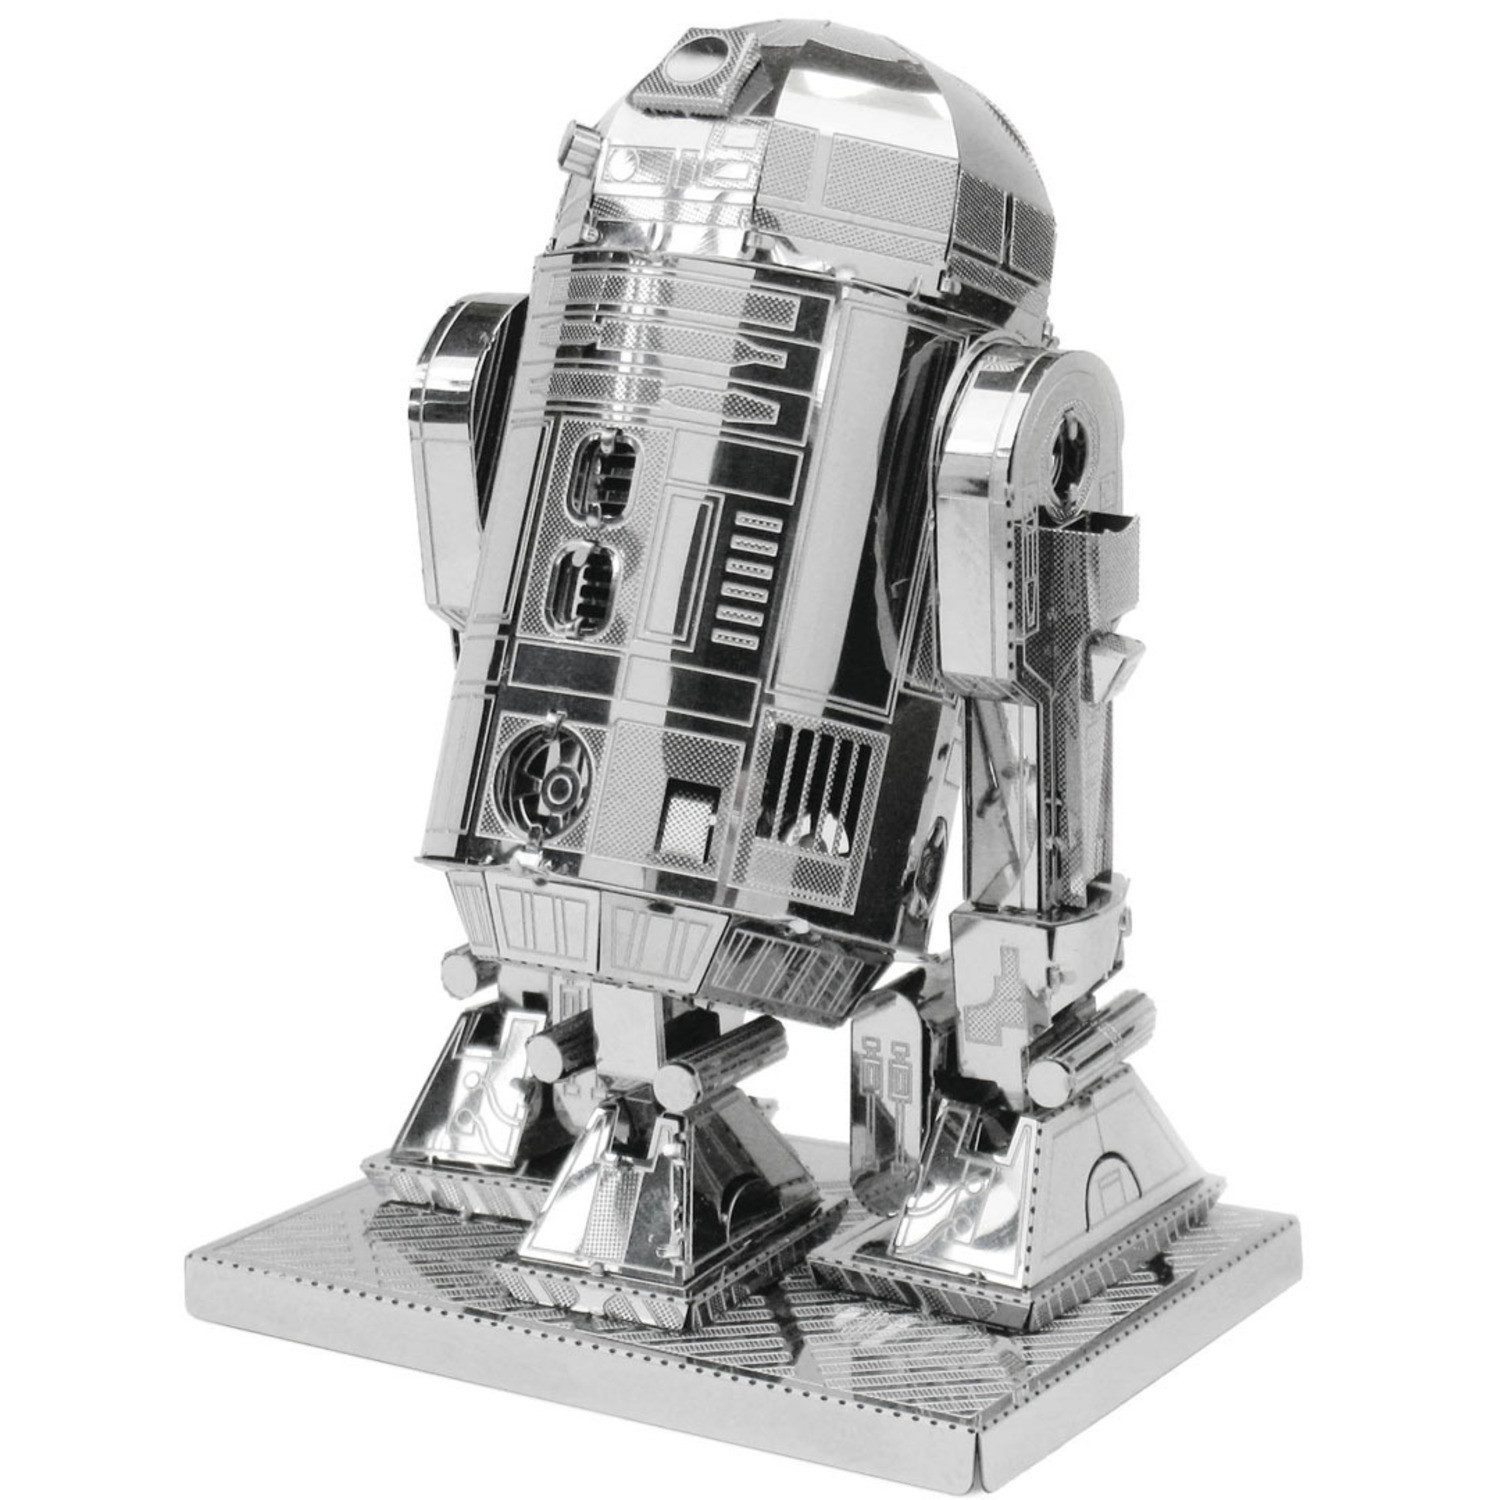 Invento Modellbausatz Star Wars R2-D2 3D Modellbausatz aus Metall